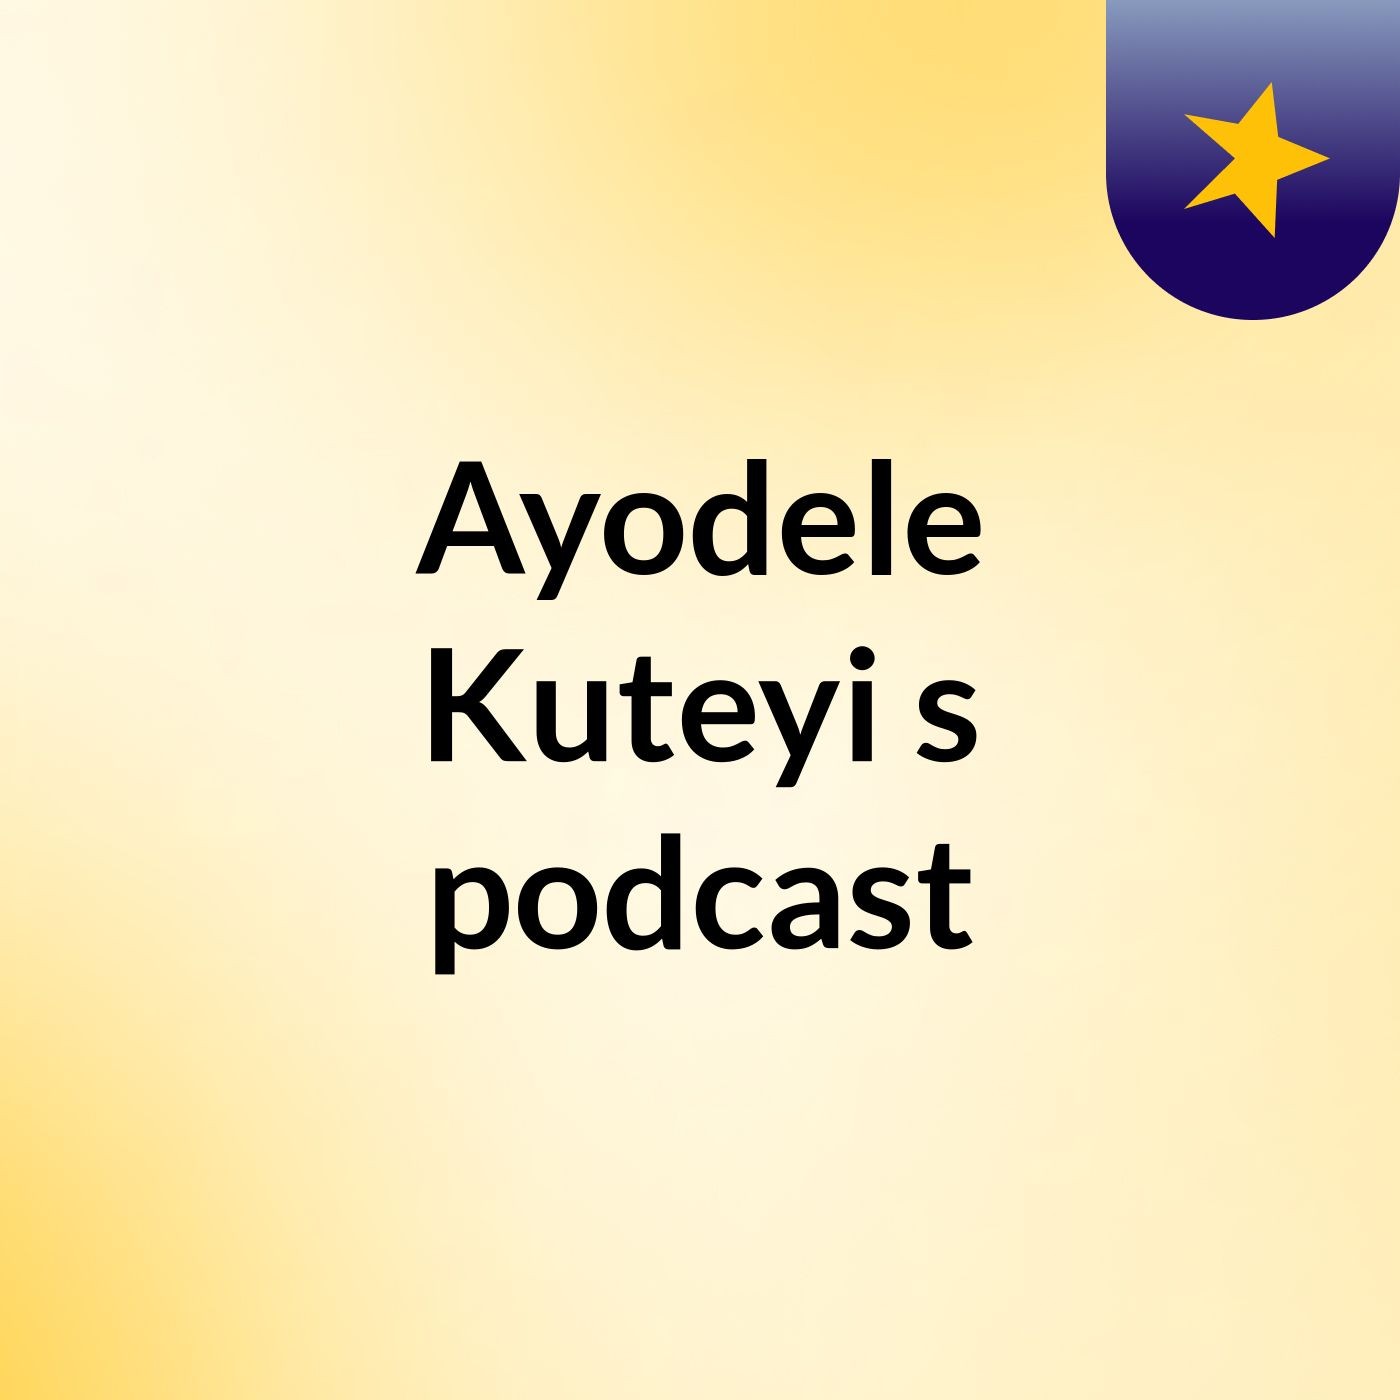 Episode 5 - Ayodele Kuteyi's podcast